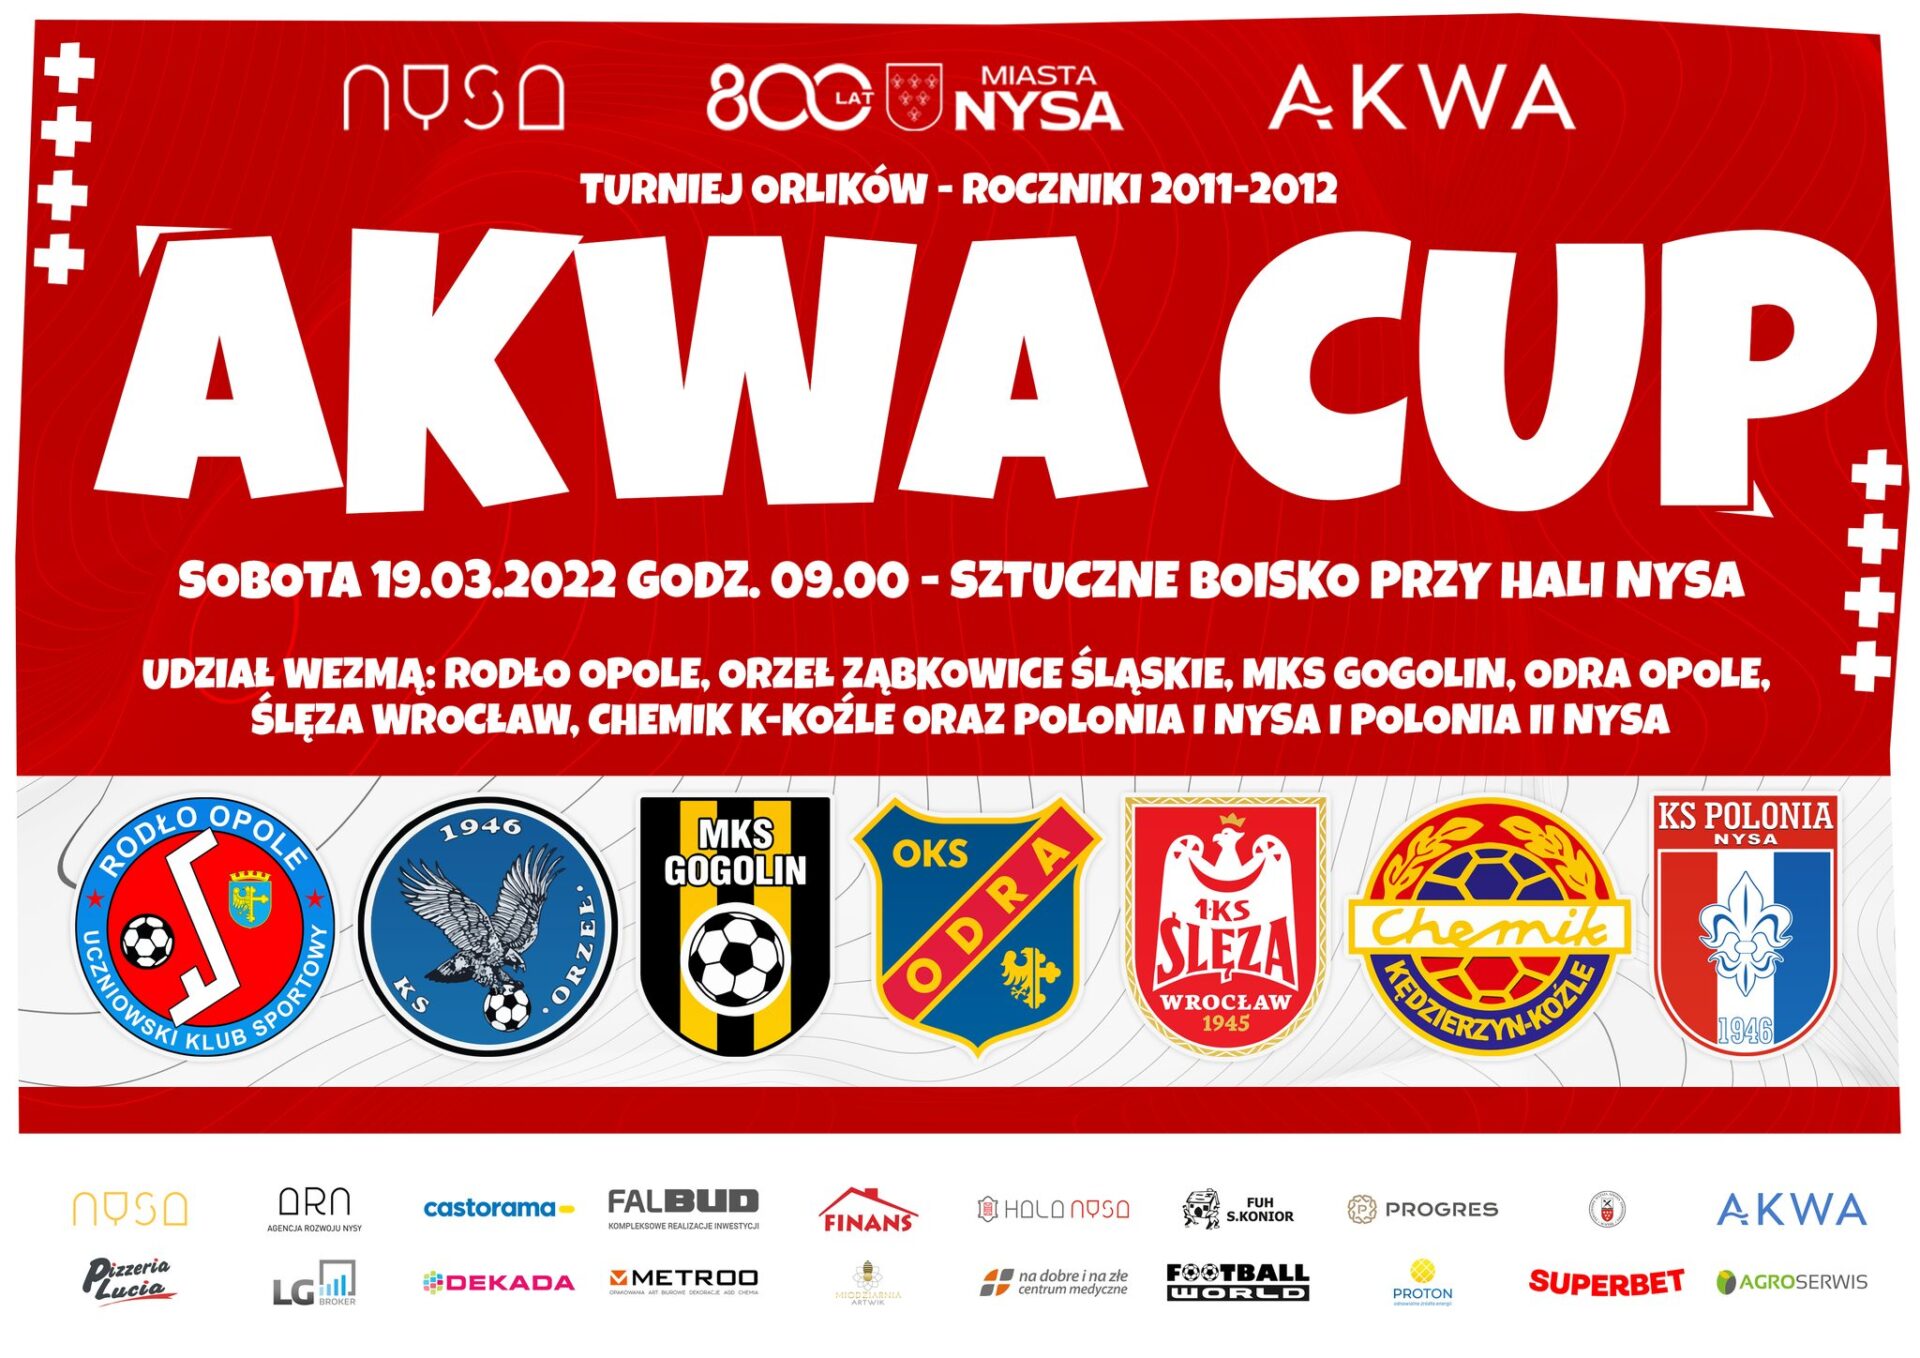 AKWA CUP